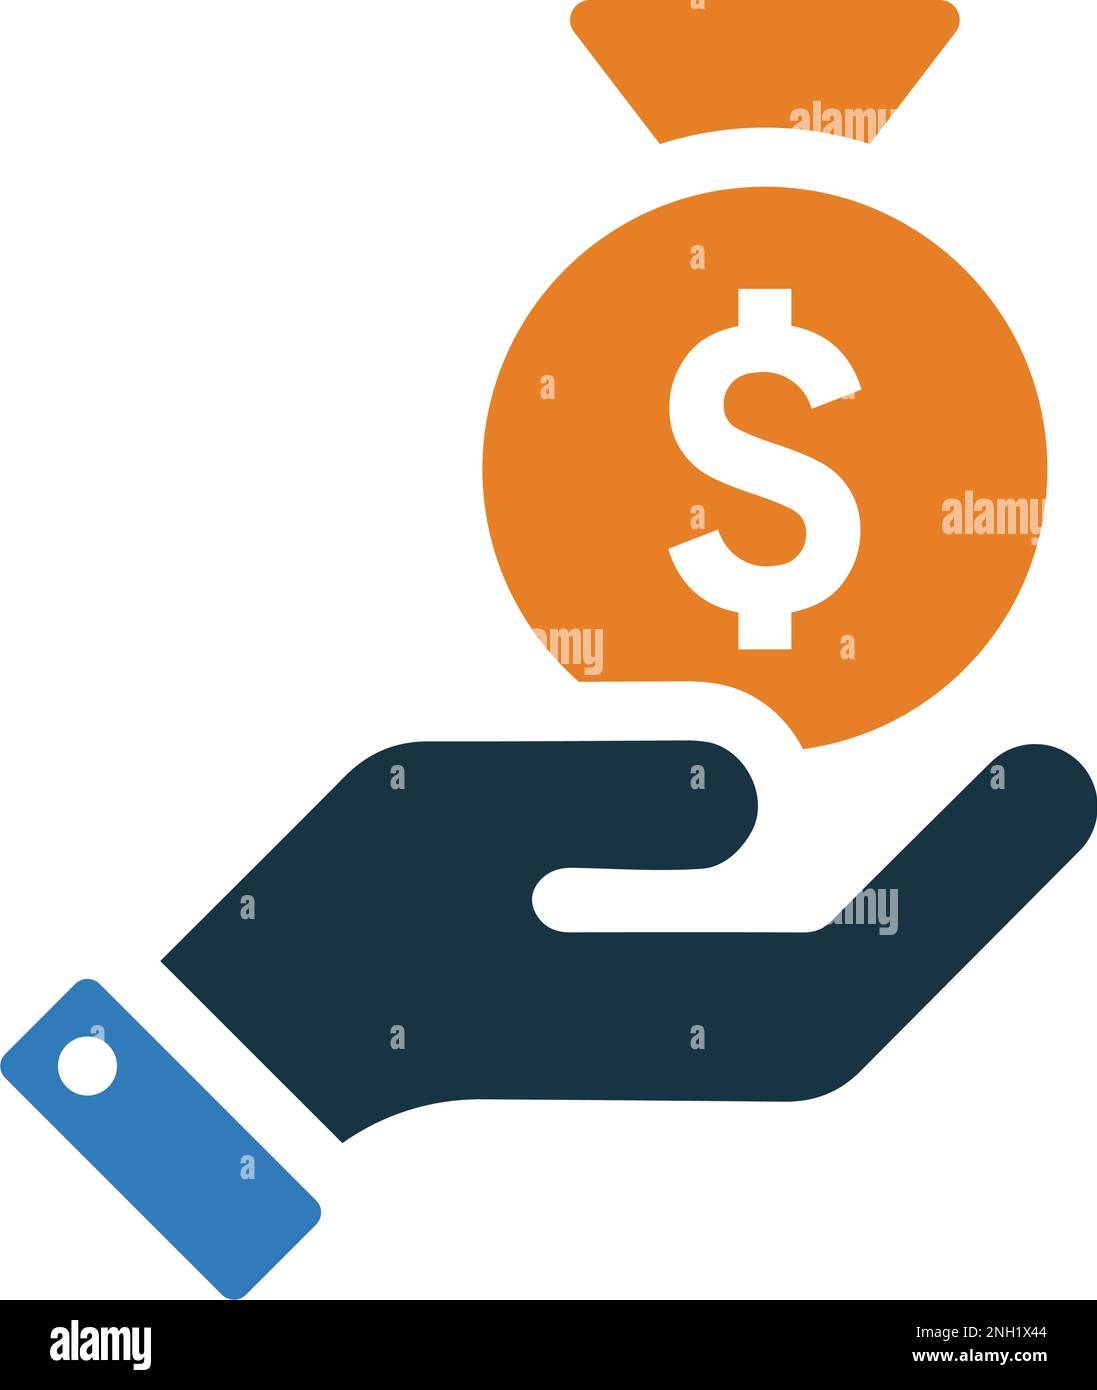 Einnahmen, Symbol für verfügbaren Geldbetrag für die Entwicklung von Mobil- und Apps oder für kommerzielle Zwecke oder jede Art von Designprojekten. Stock Vektor